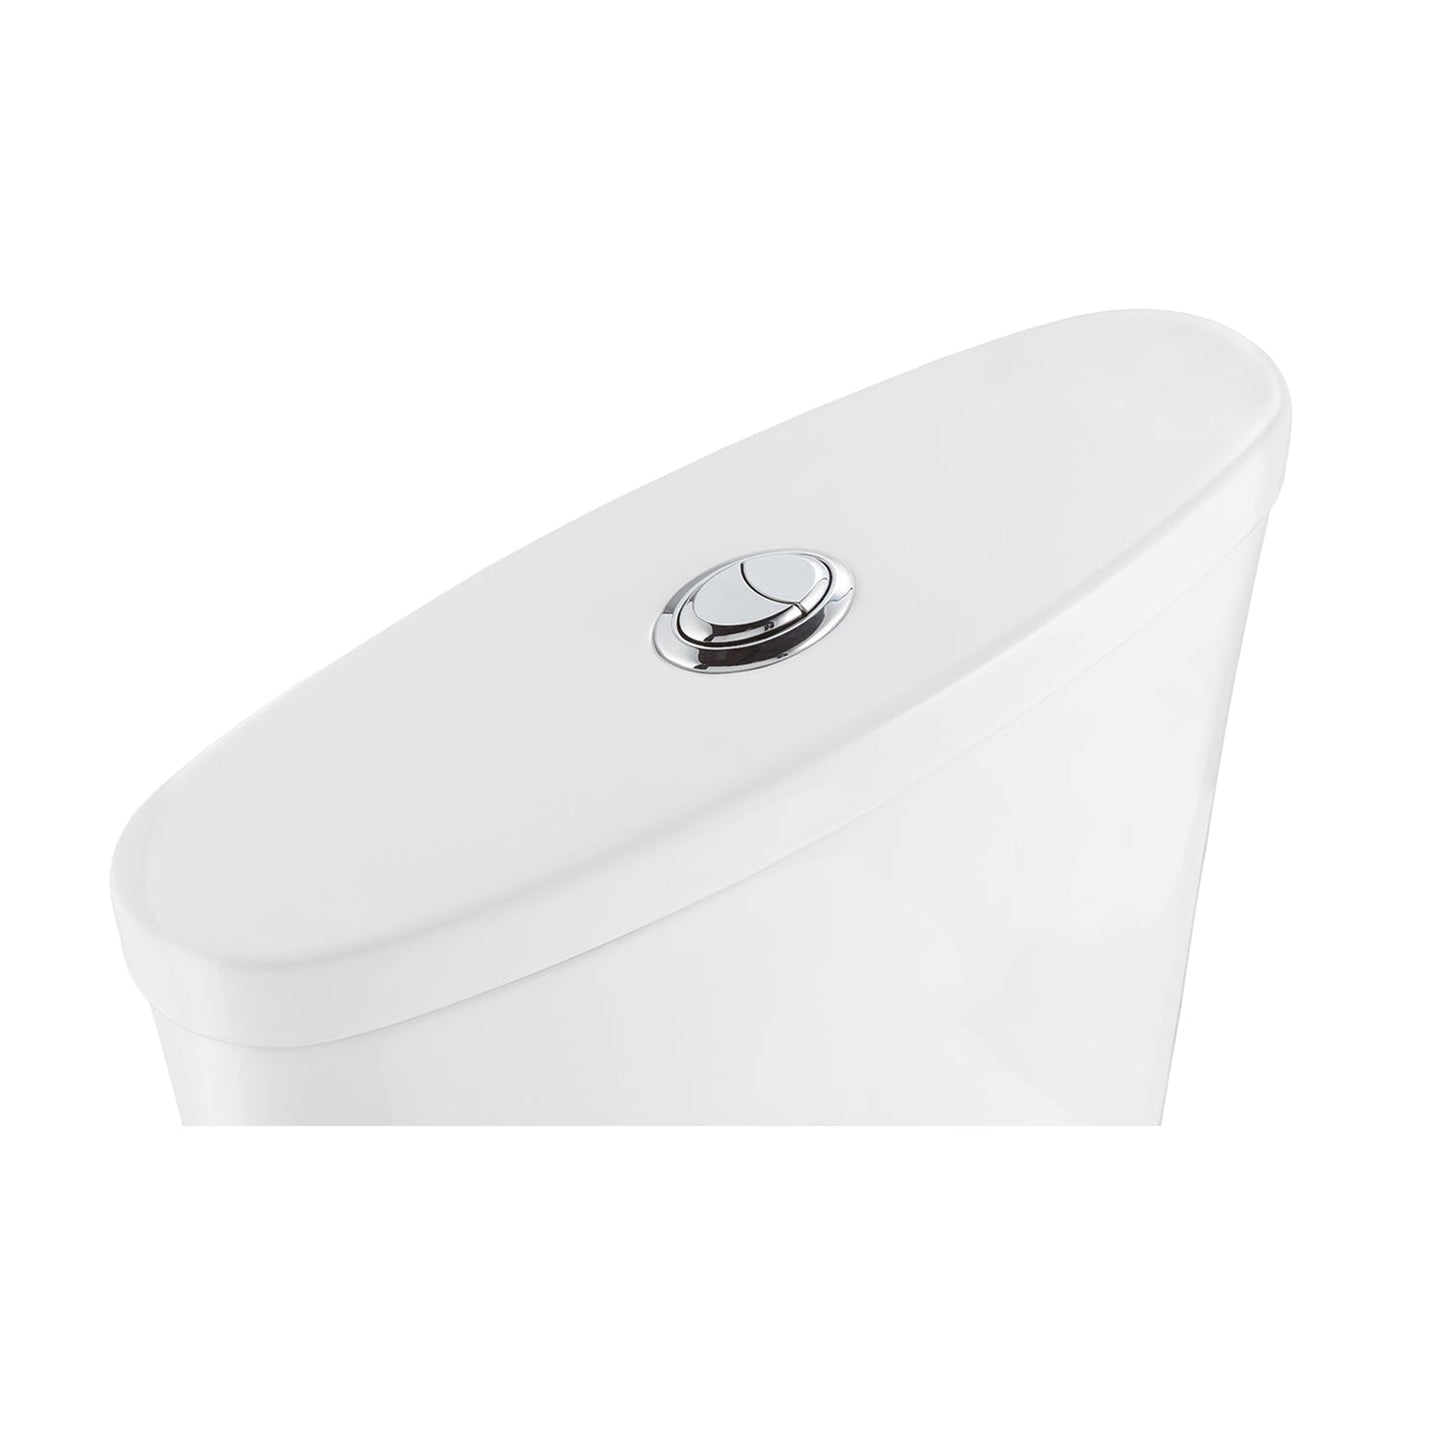 Altair Ibiza Elongated White Ceramic 1.6/1.1 GPF Dual Flush One-Piece Toilet